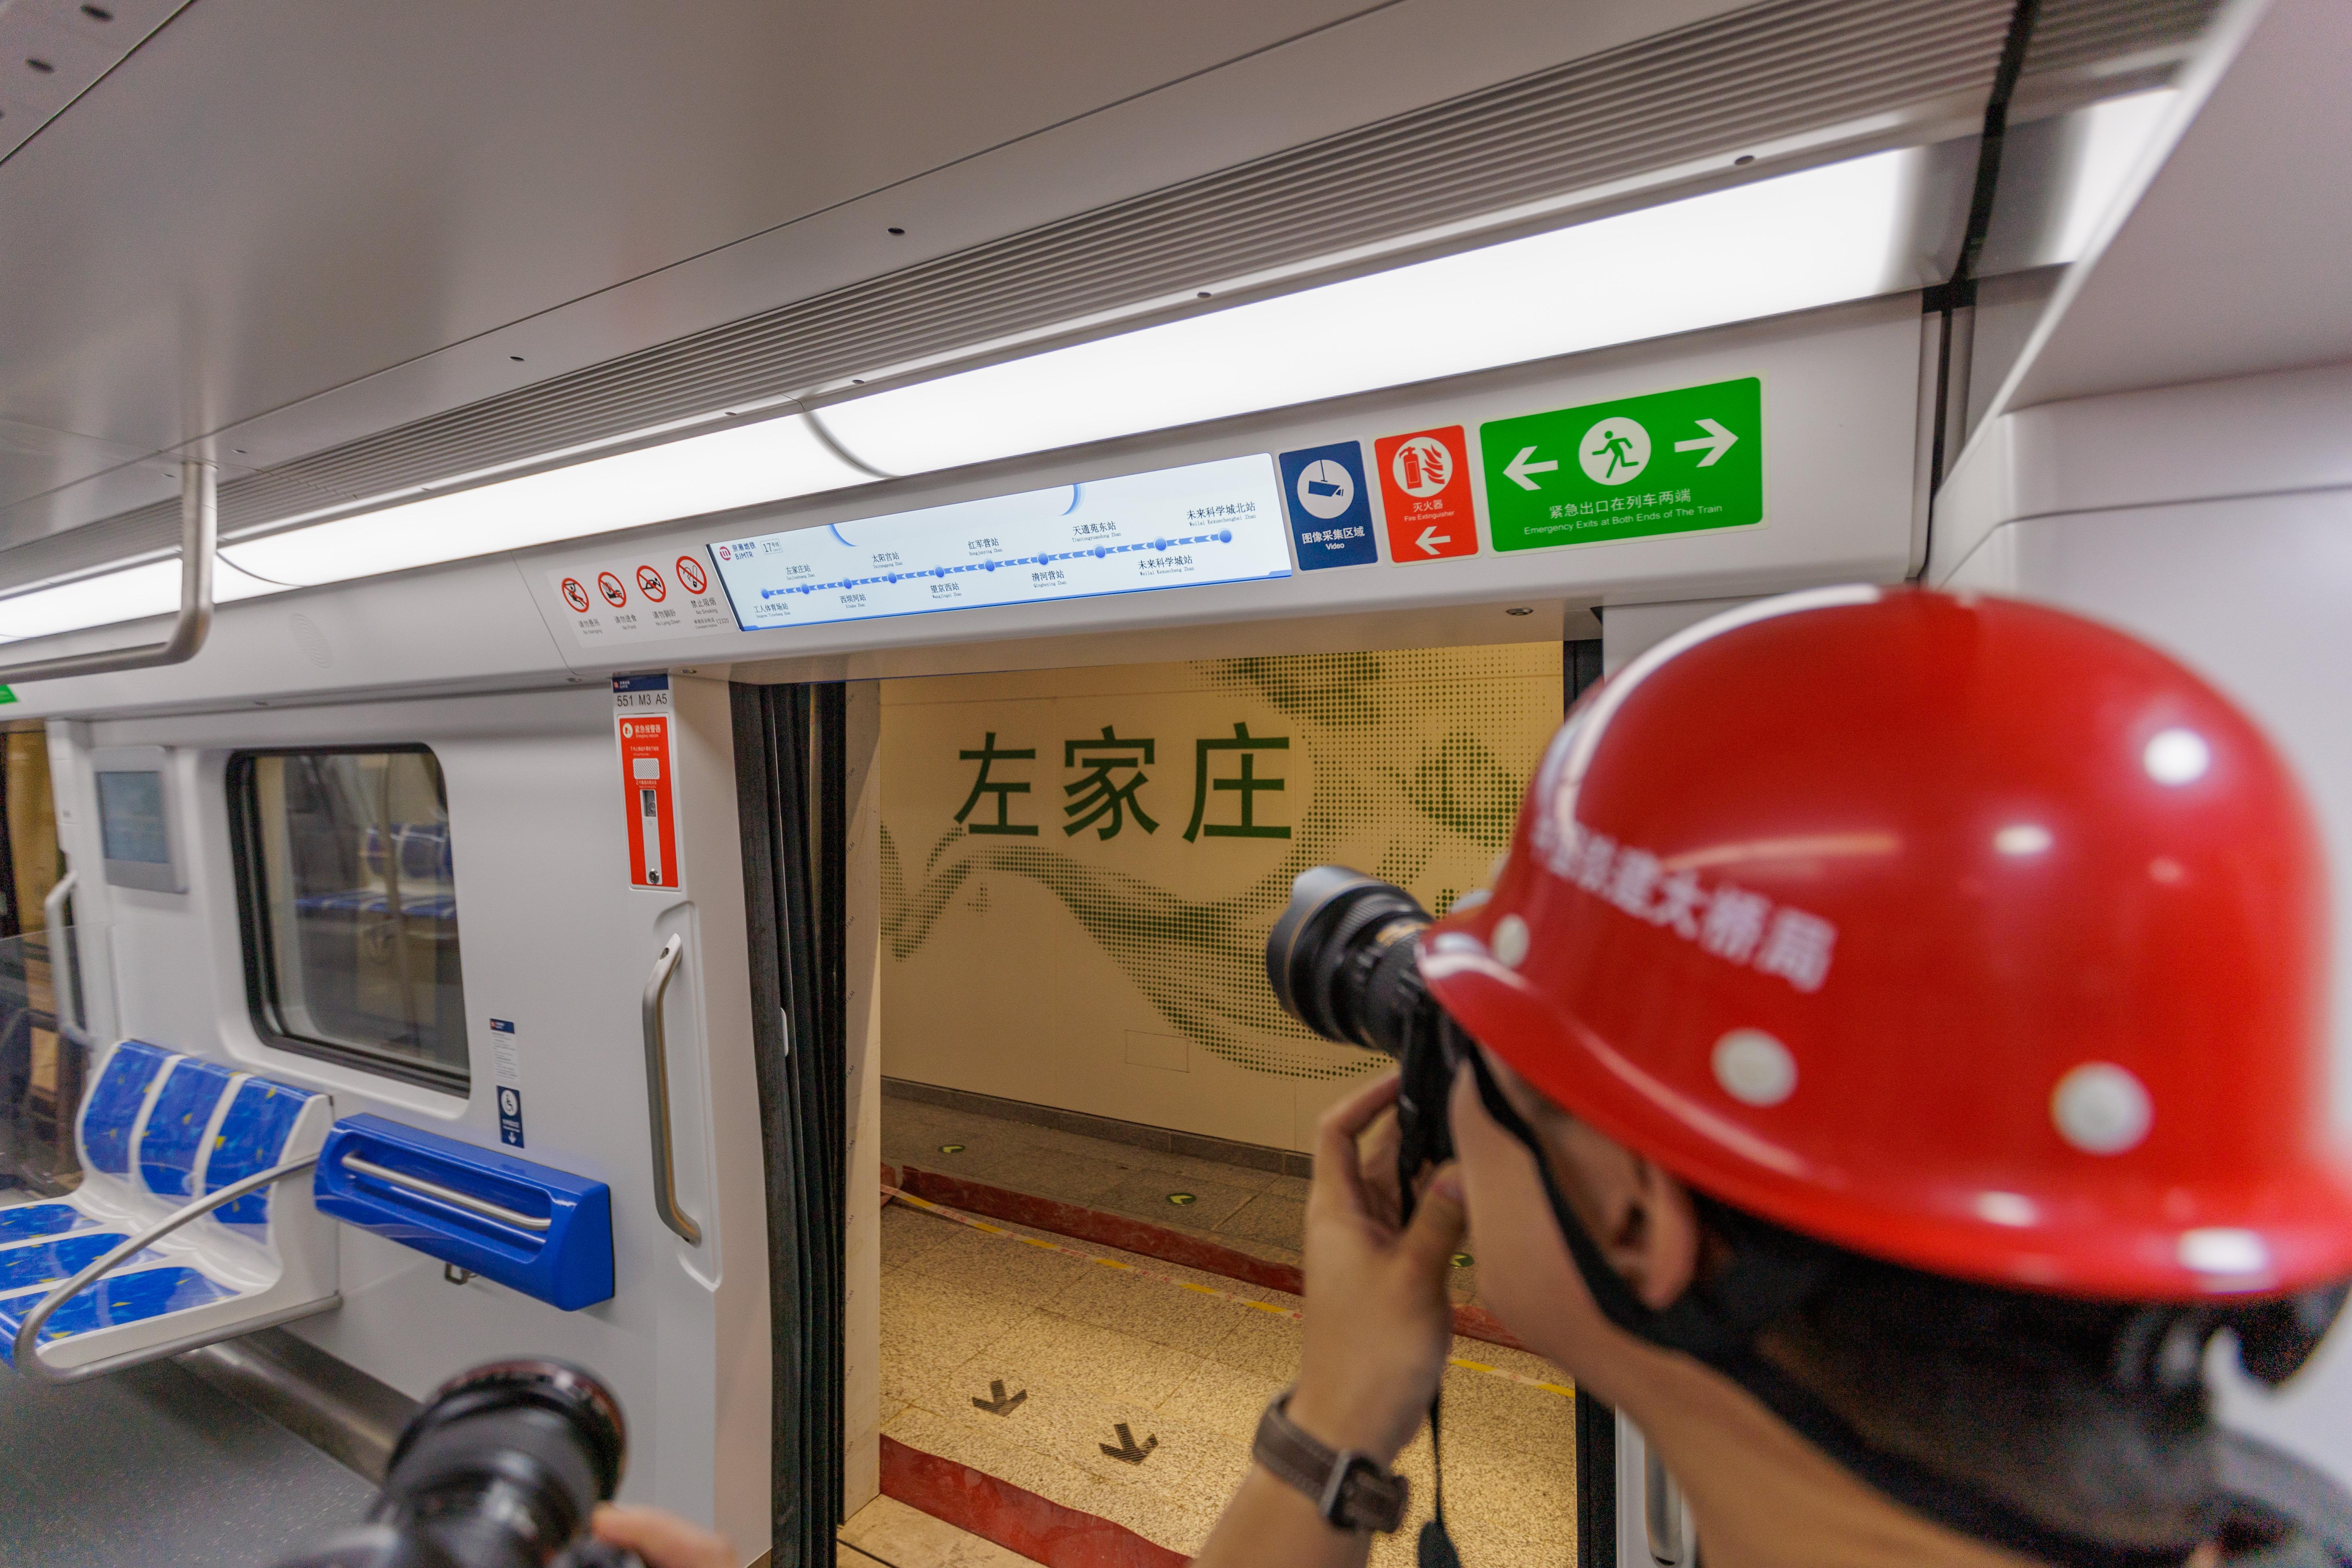 北京地铁时间间隔时间_北京地铁16号线时间_北京地铁起止时间